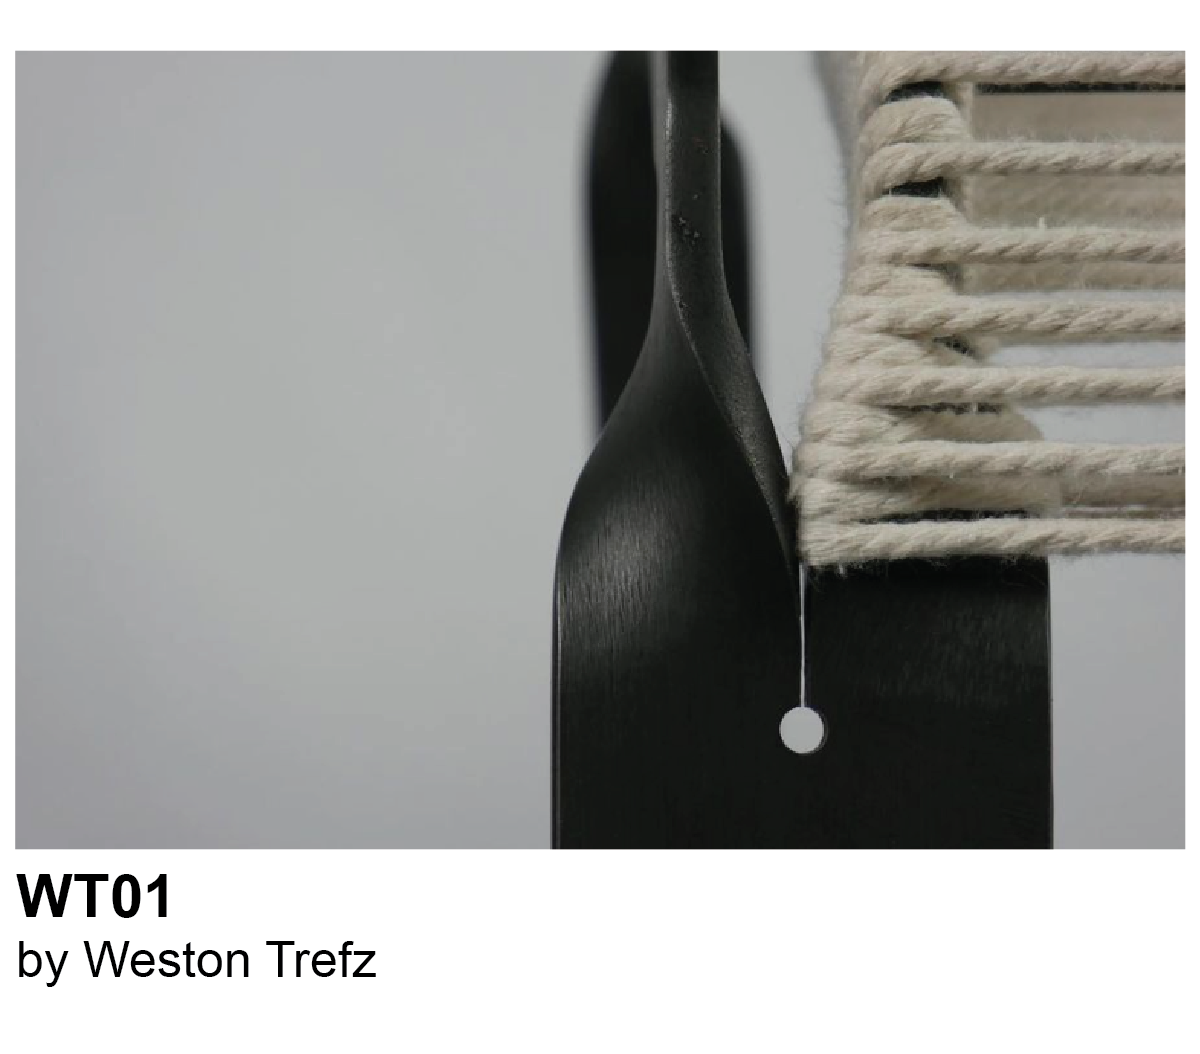 WT01 by Weston Trefz